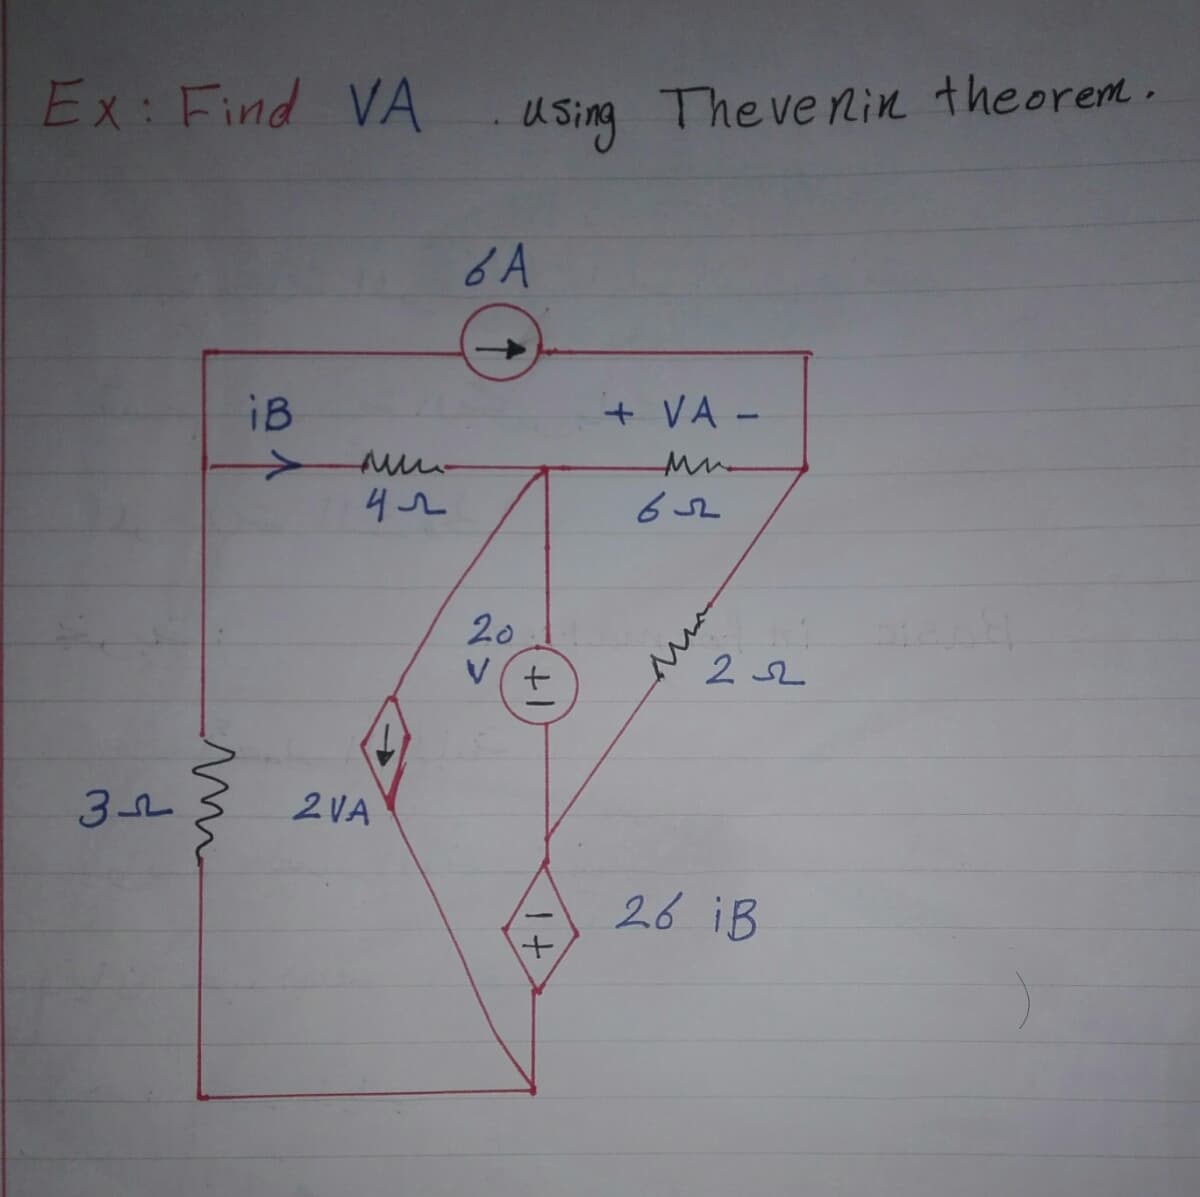 Ex: Find VA
U Sing The ve nin theorem.
6A
iB
+ VA -
20
V(+
2 52
2VA
26 iB
